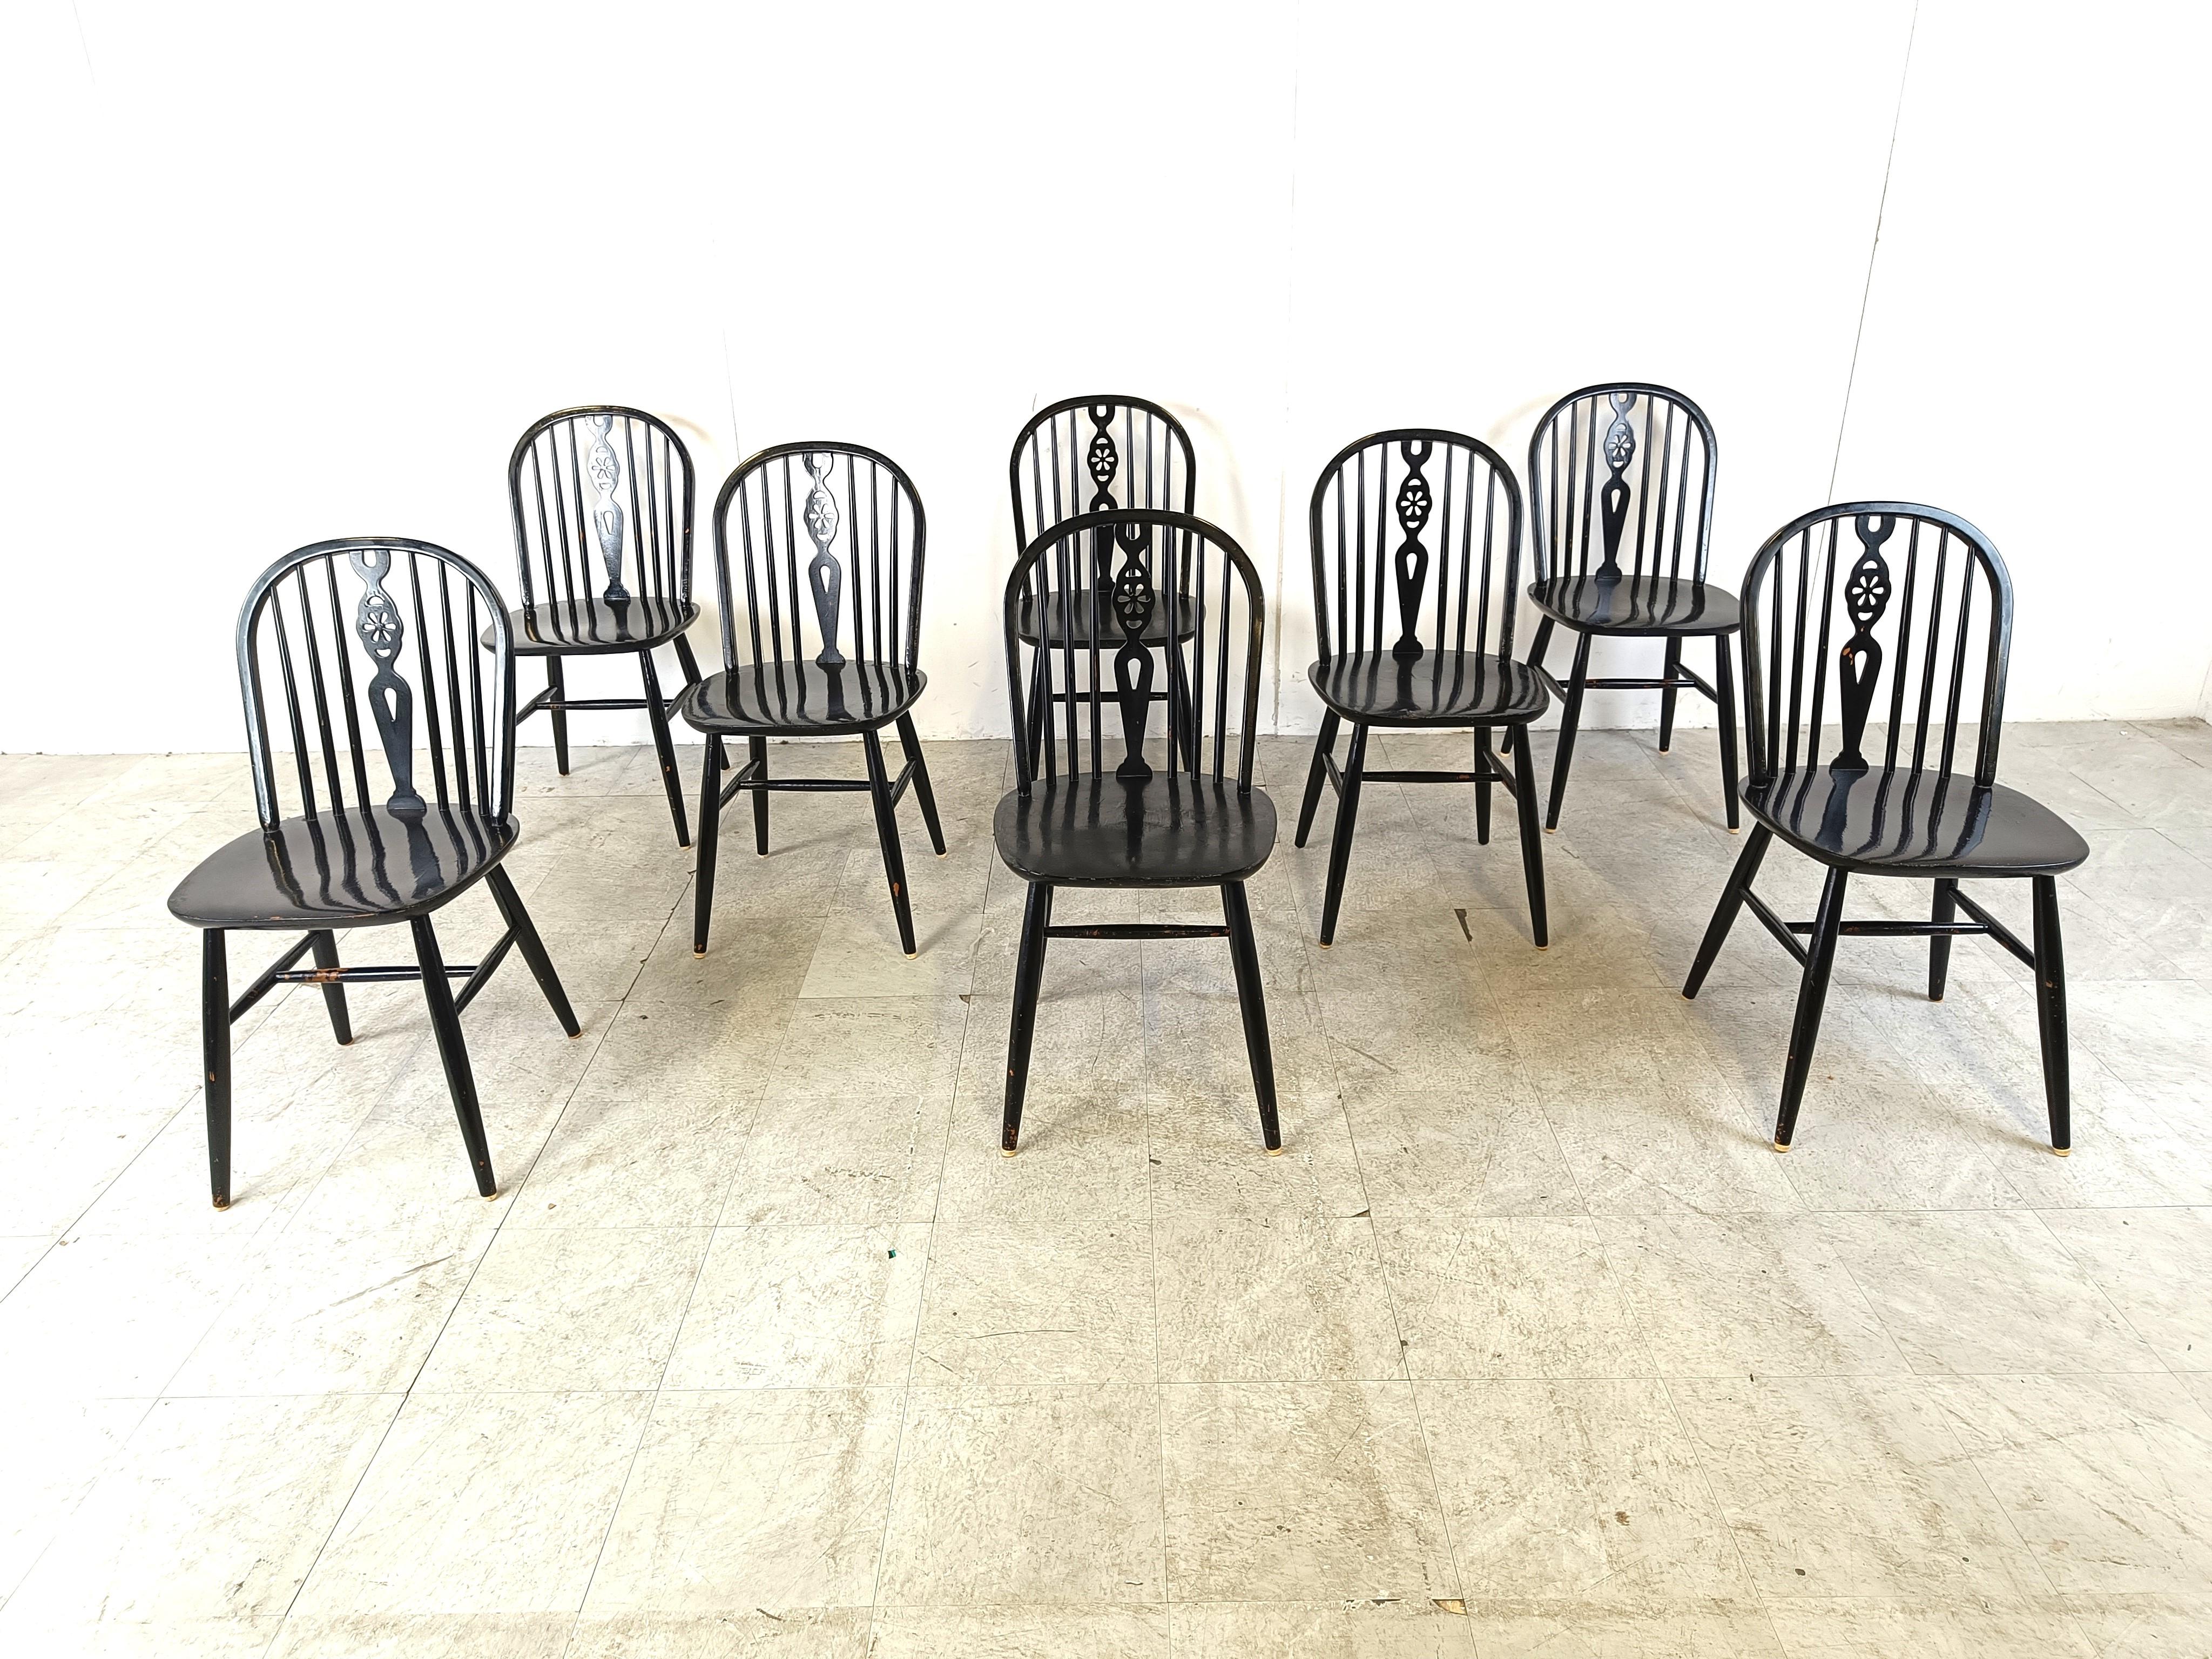 Satz von 8 Ercol Esszimmerstühlen mit Spindelrücken.

Die Stühle sind mit viel Liebe zum Detail gefertigt und bestehen aus ebonisierten Holzrahmen.

Zeitlose Stücke, die Ihrem Interieur einen antiken/vintage Touch verleihen und sich gut mit modernen